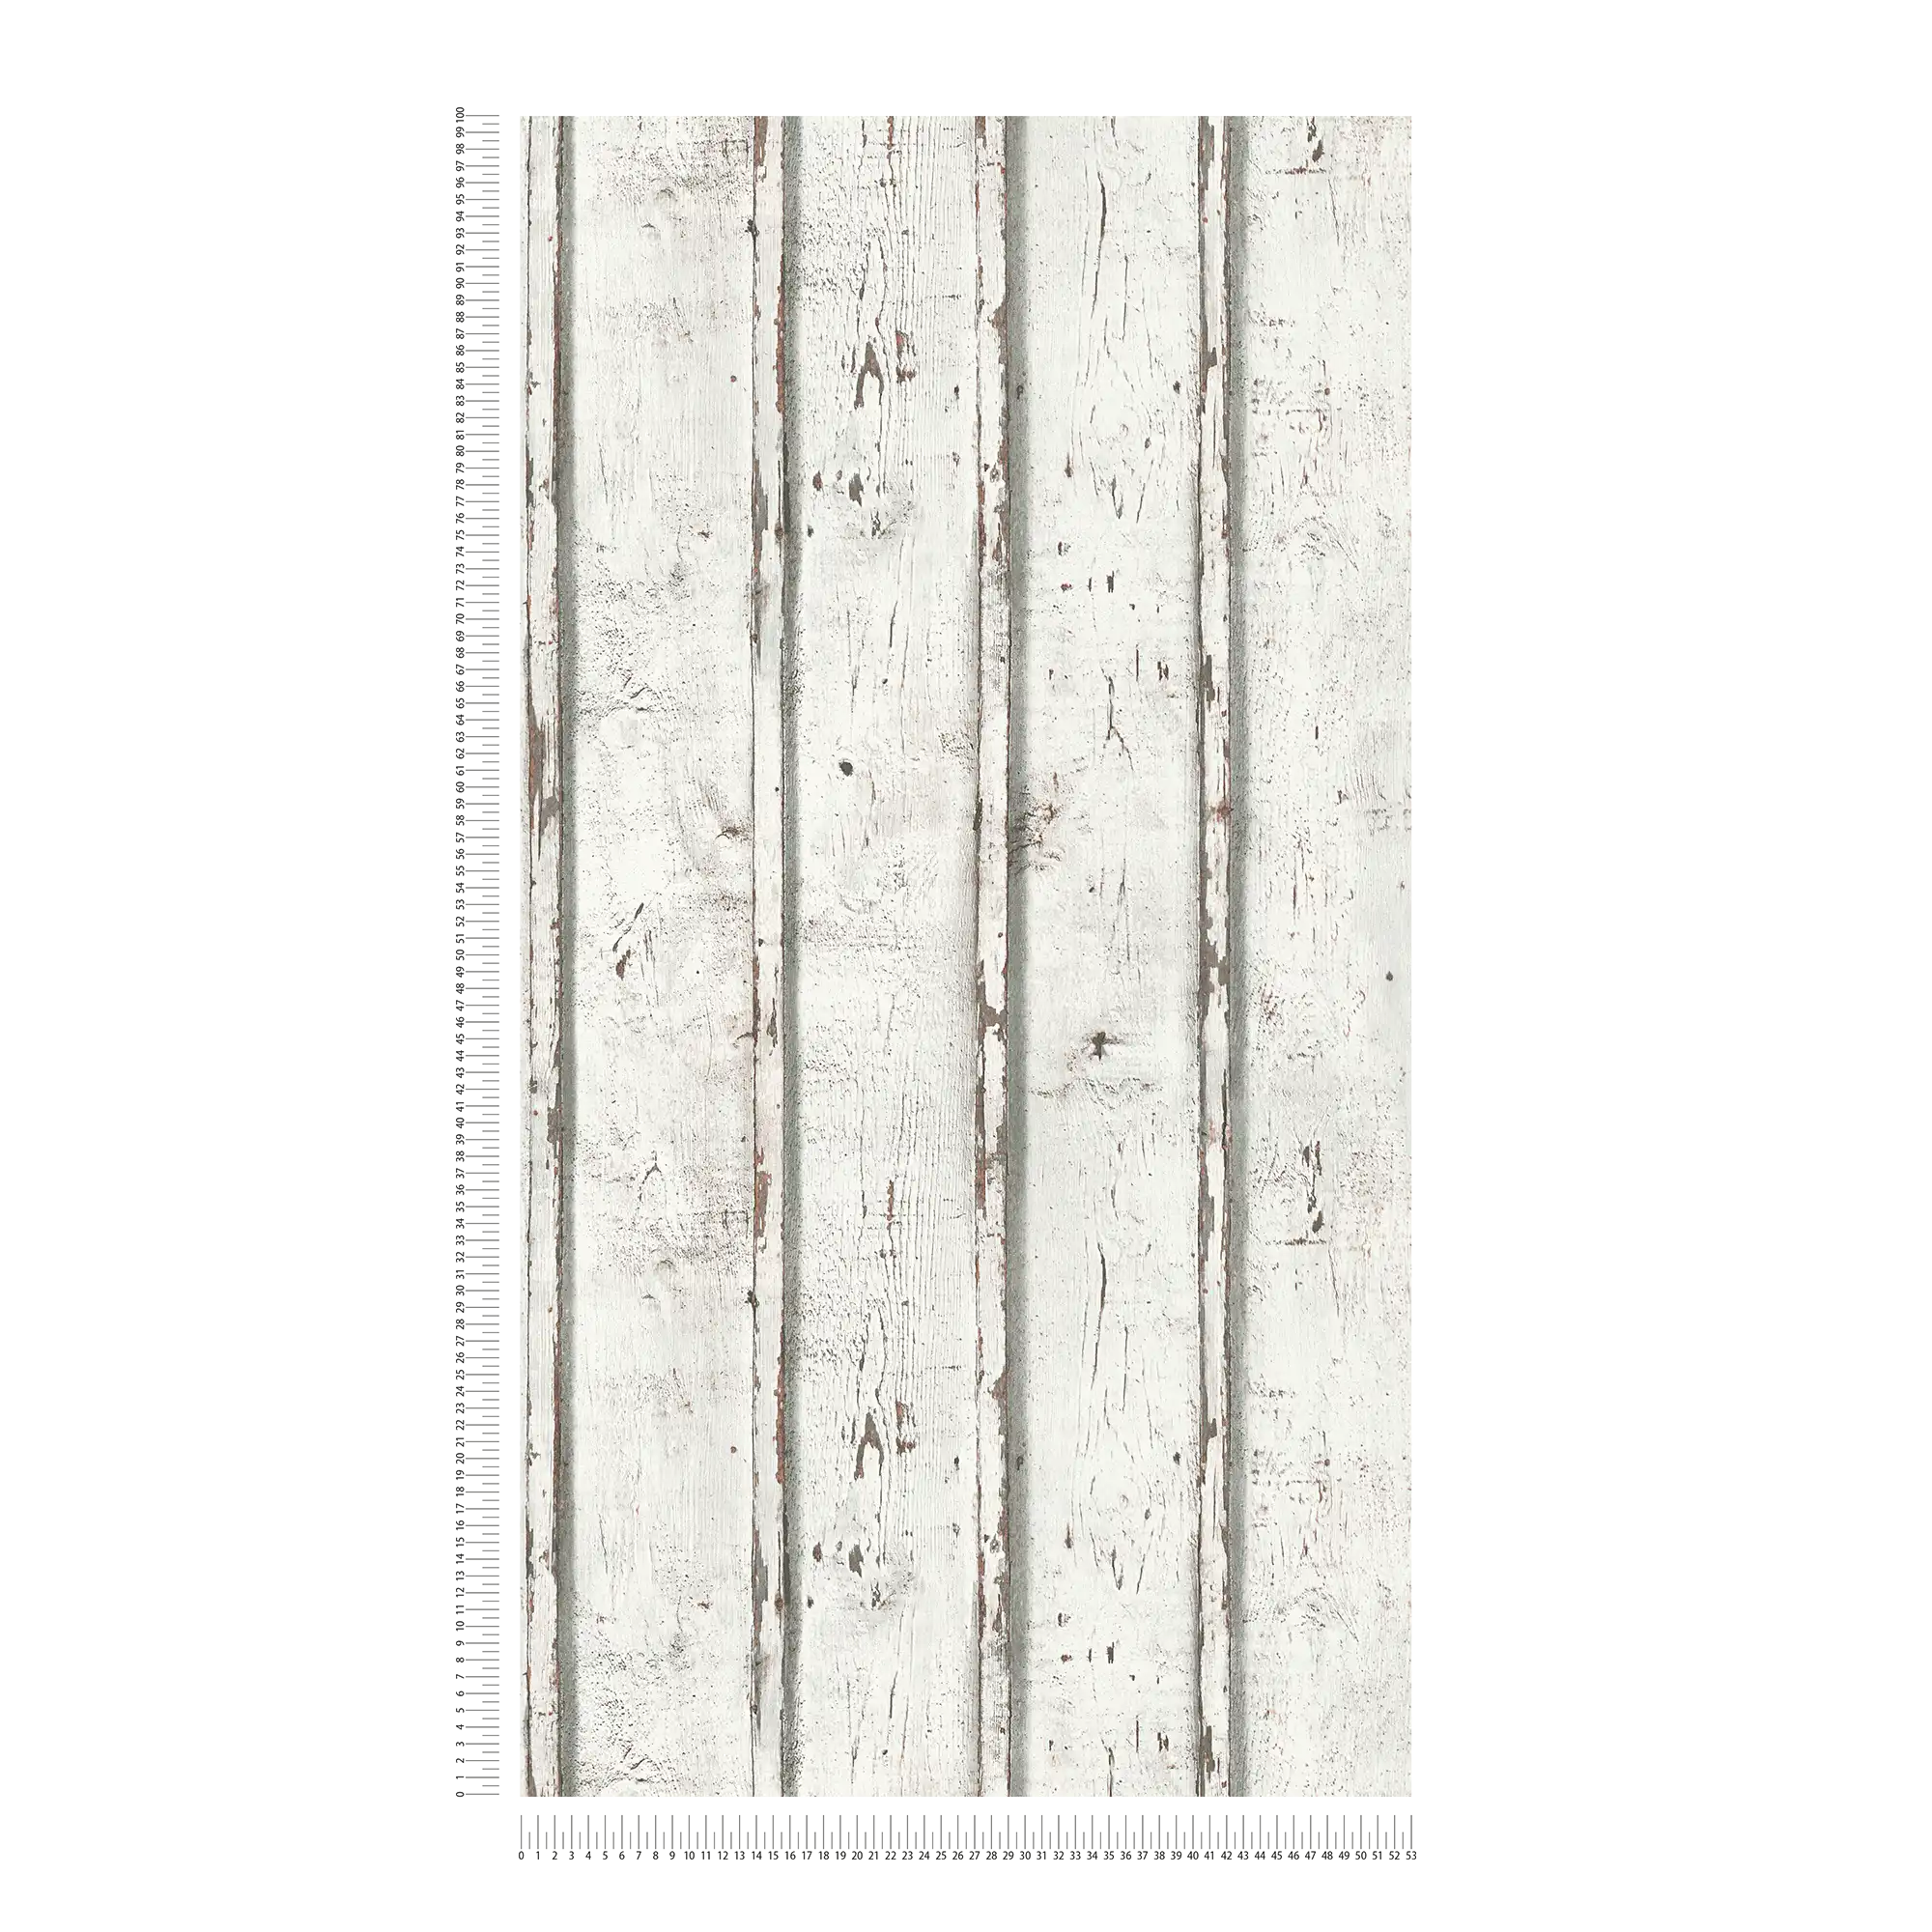             Houten behang in used look met verweerde houten planken - wit, crème, grijs
        